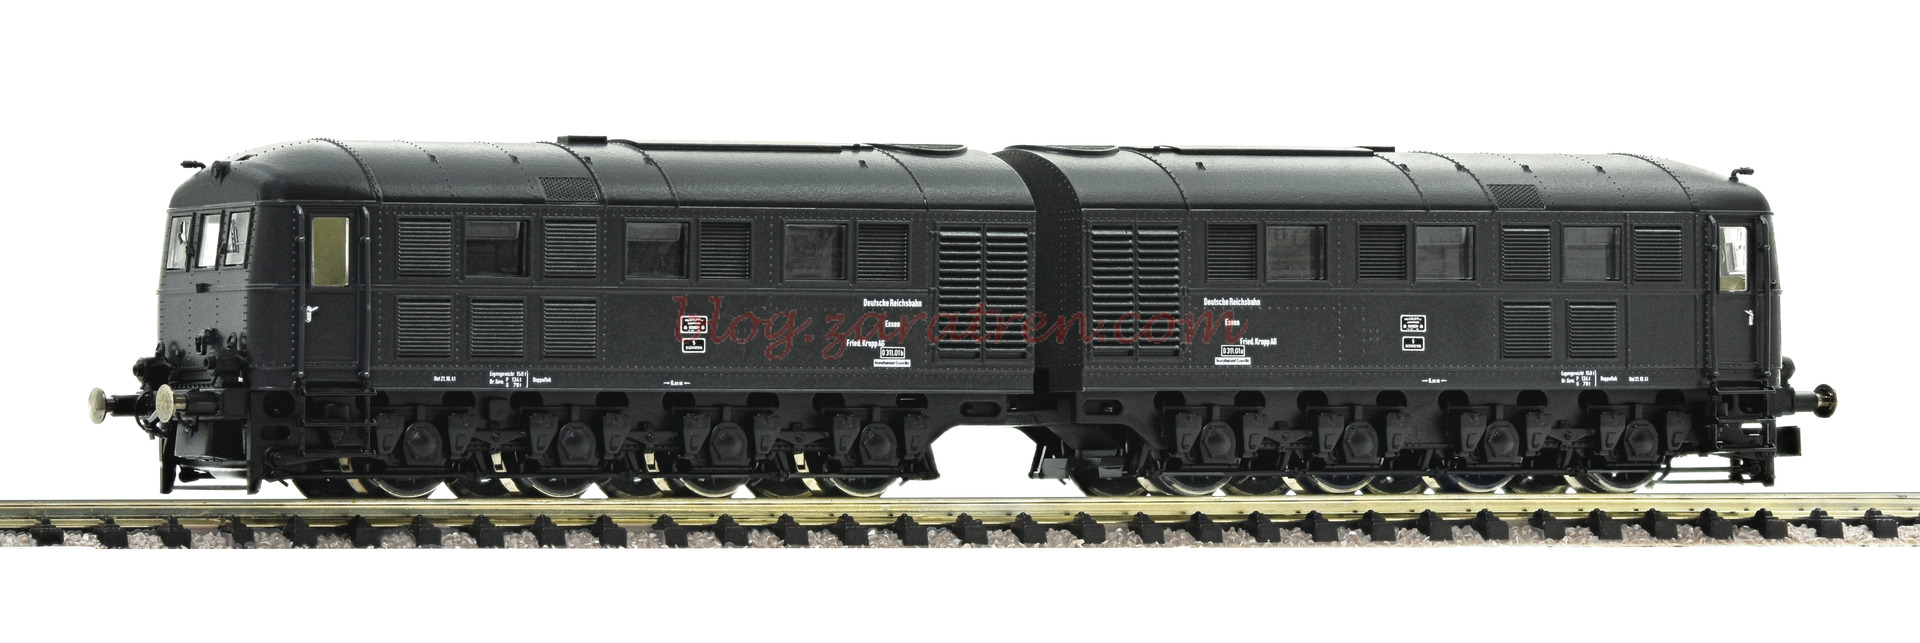 Fleischmann – Locomotora diesel D311.01, DWM, Analogica, Epoca II, Escala N, Ref: 725101.